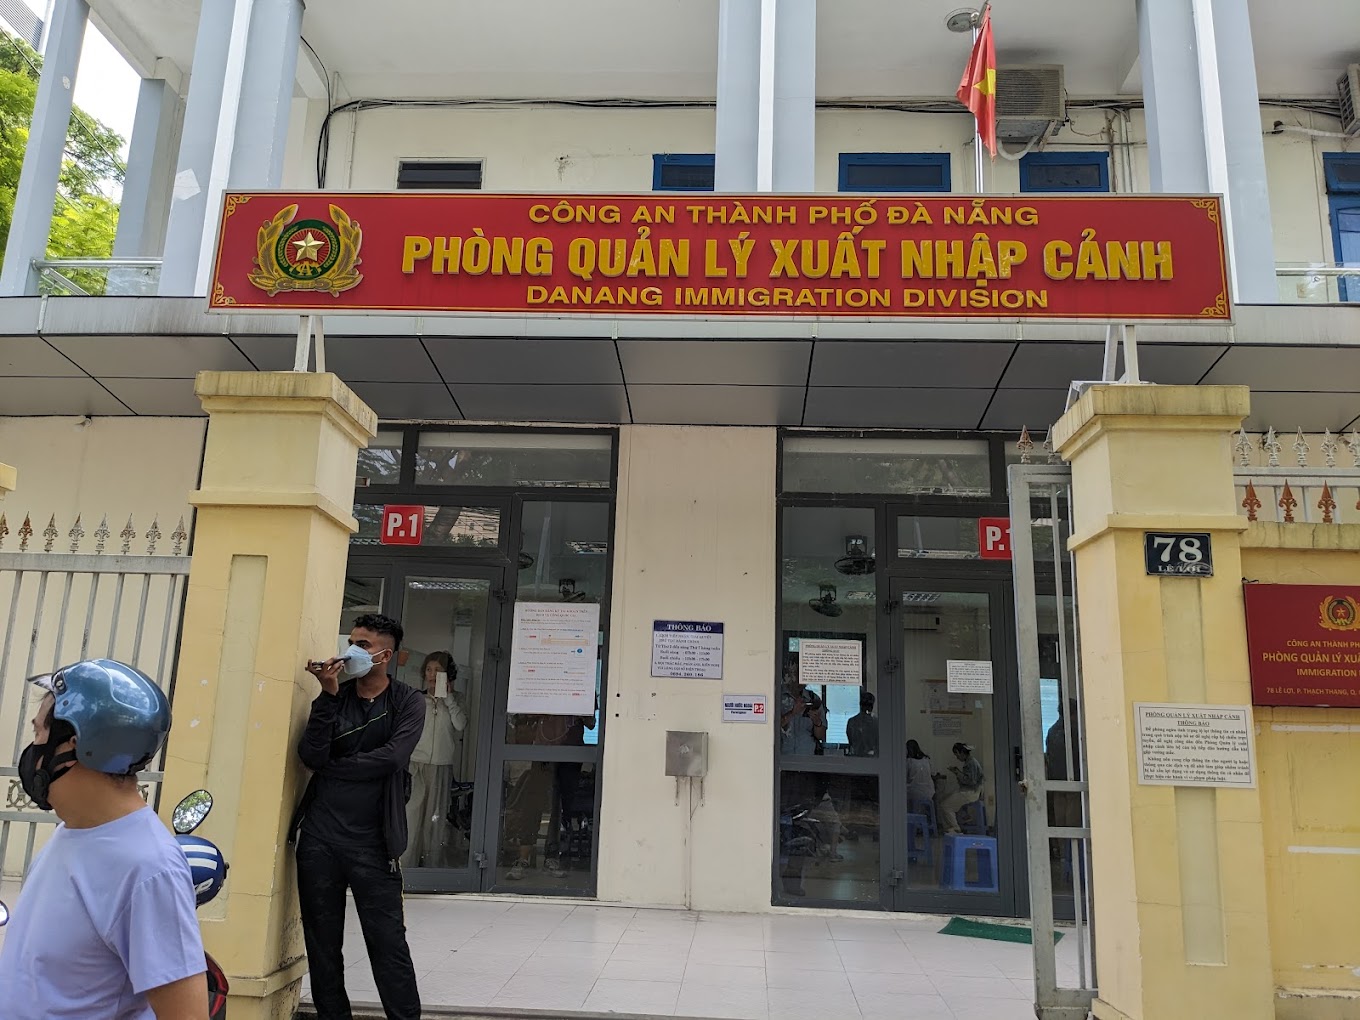 Phòng Quản Lý Xuất Nhập Cảnh Tại Tp Đà Nẵng